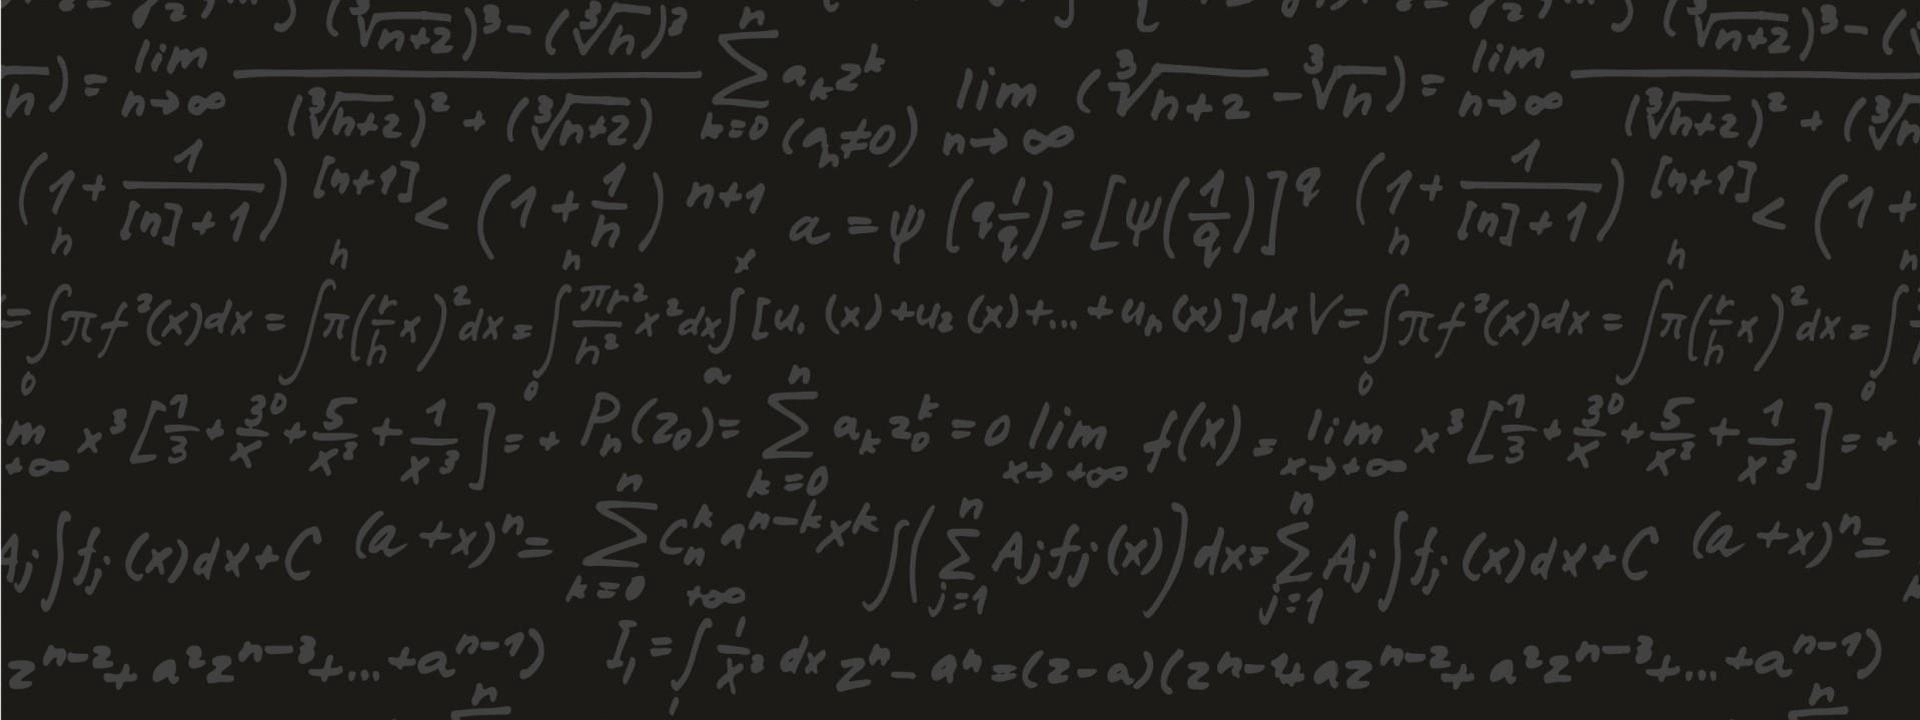 Sobre a solução de equações algébricas